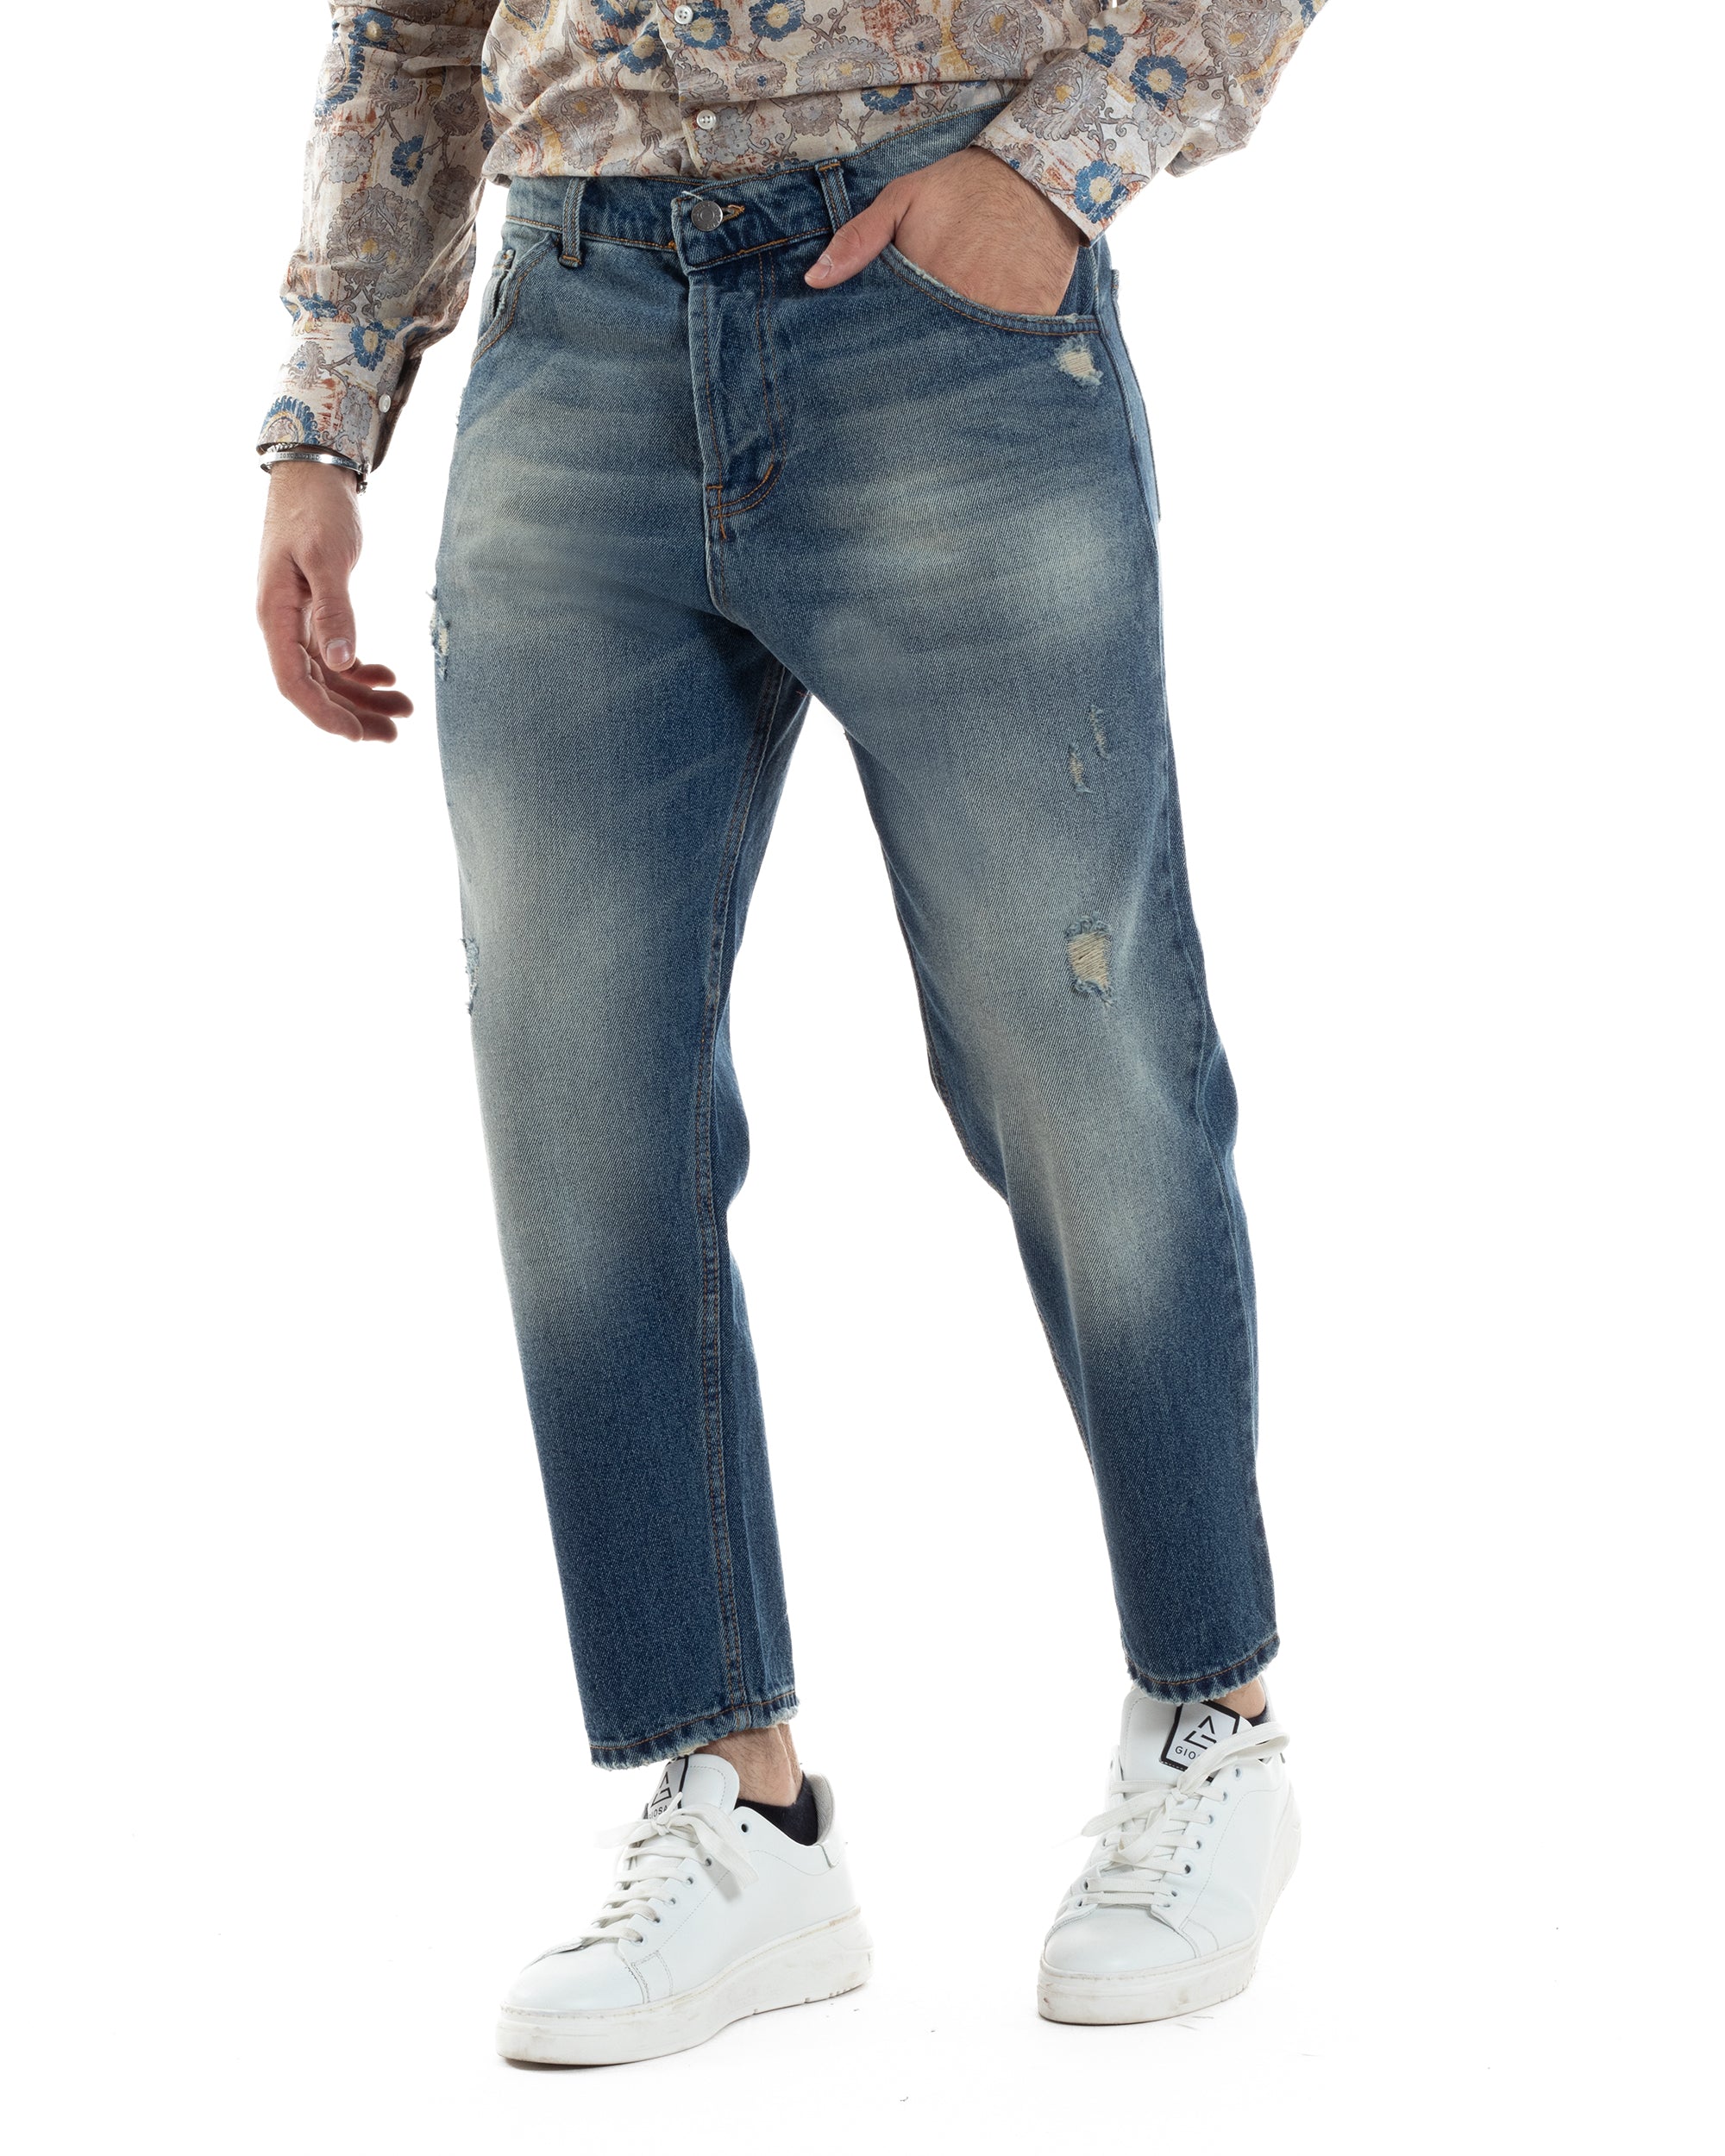 Pantaloni Jeans Uomo Loose Fit Denim Sabbiato Con Rotture Cinque Tasche GIOSAL-JS1035A